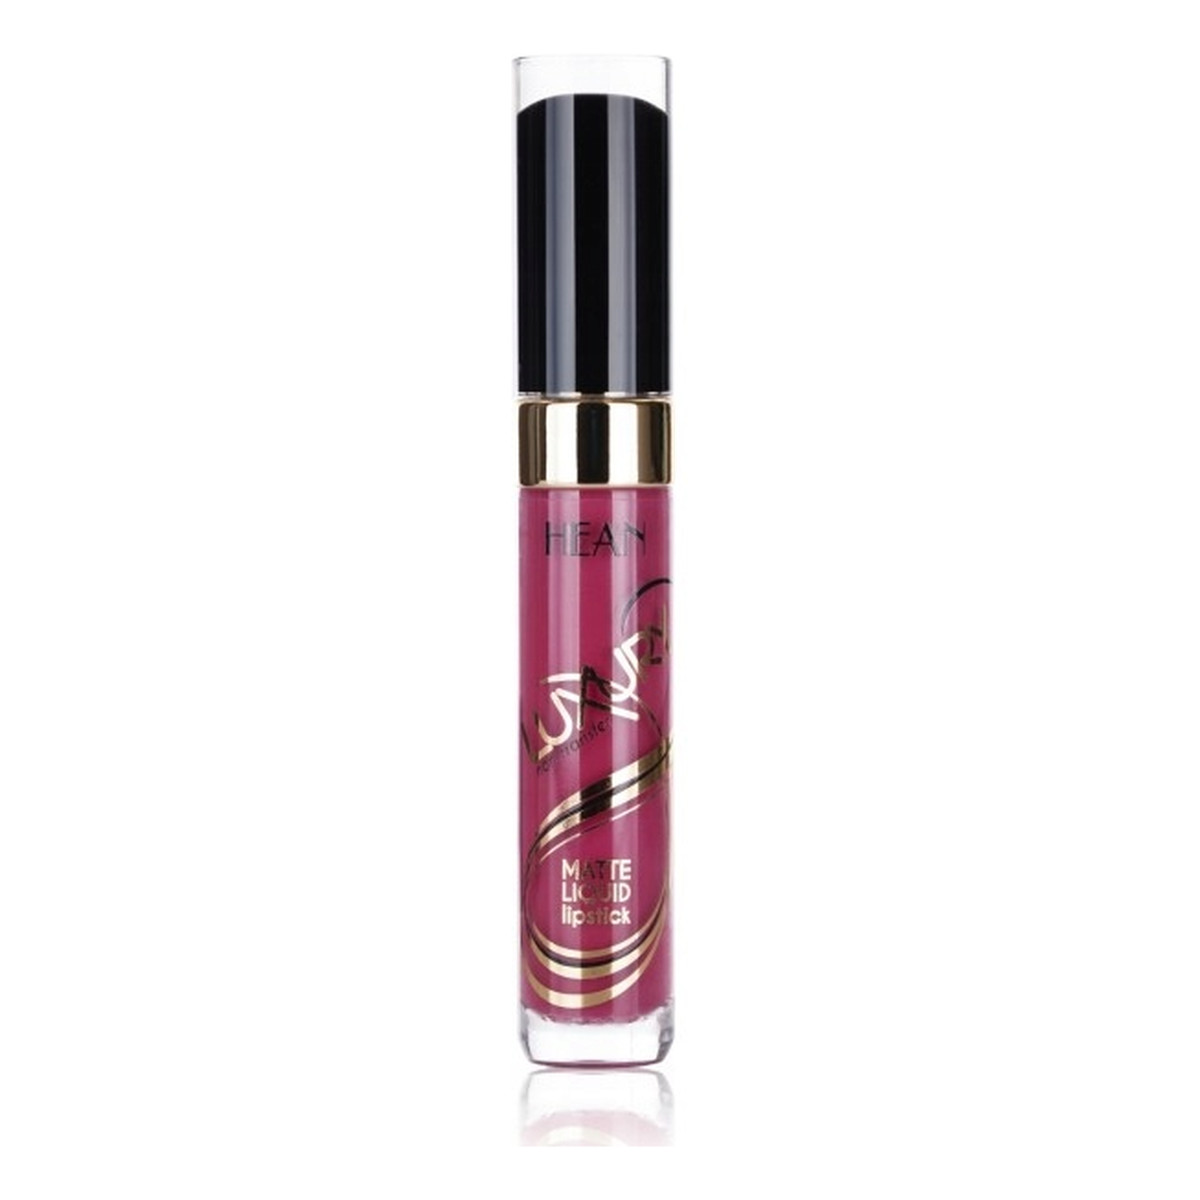 Hean Luxury matte liquid lipstick trwała matowa pomadka do ust w płynie Smoke Rubin (05 ) 8ml